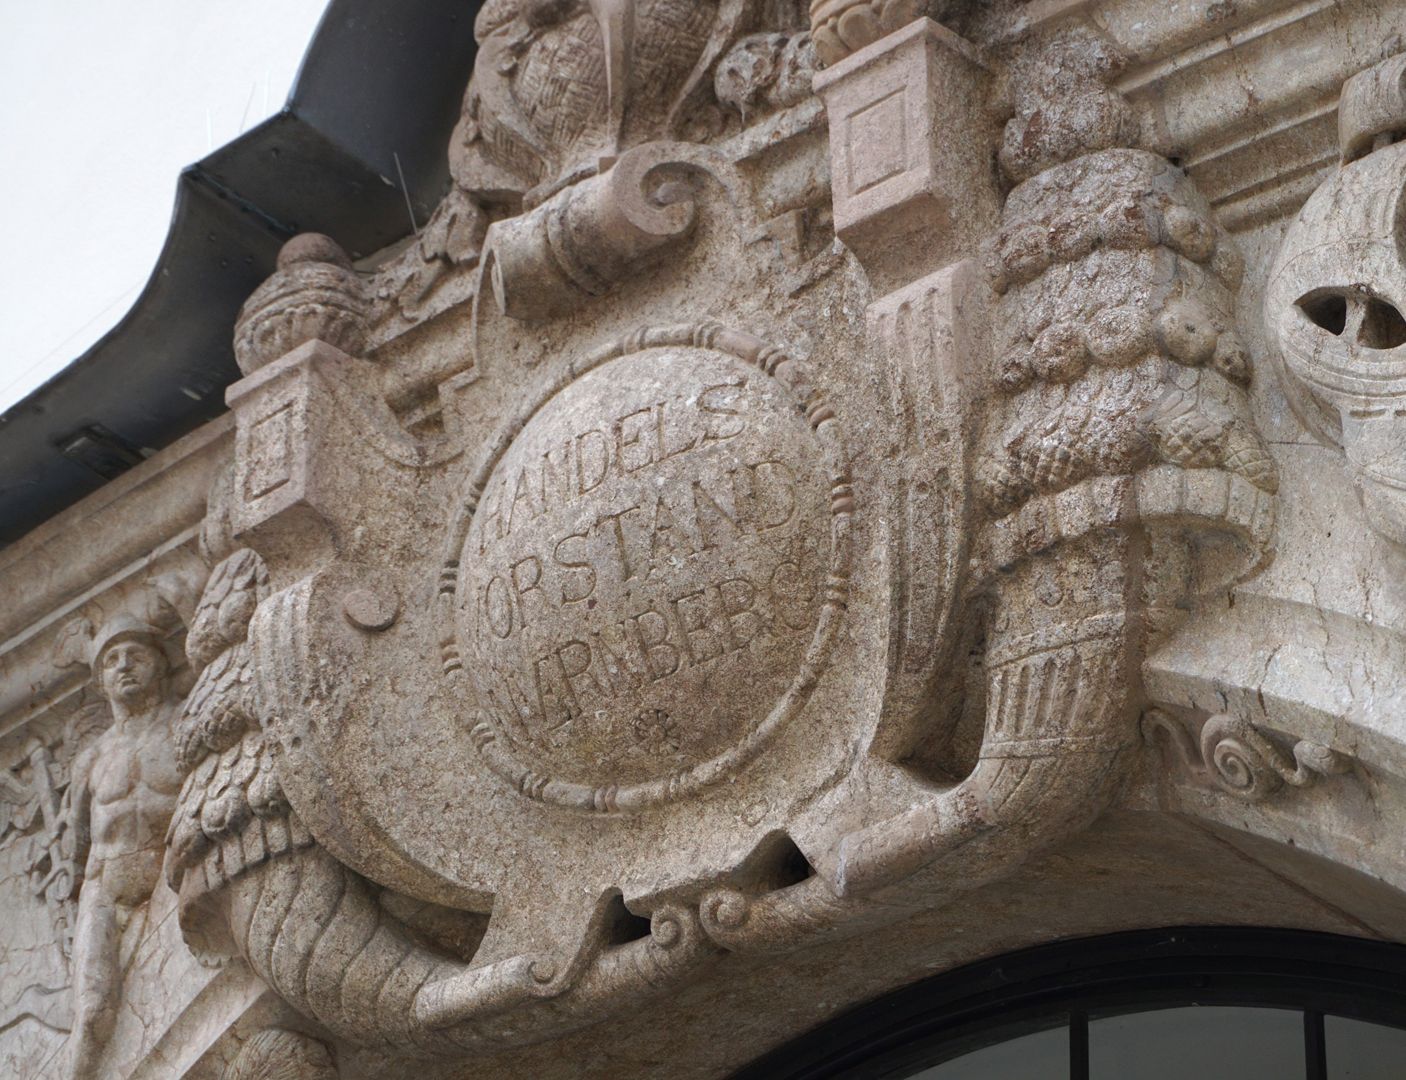 Portal cartouche with inscription Trade Board Nuremberg